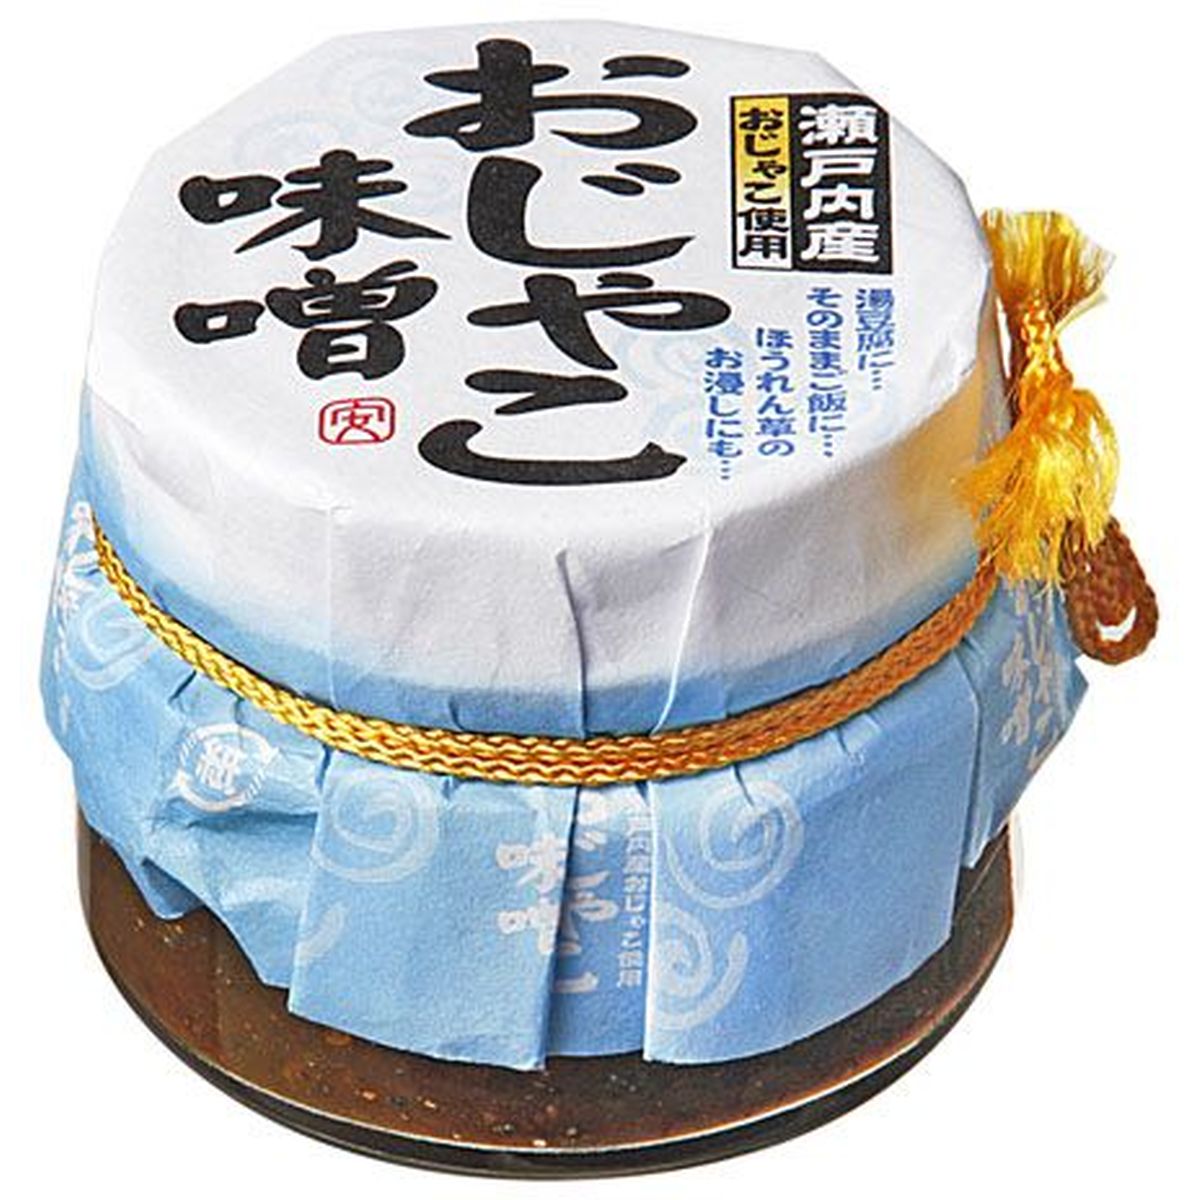 【40個入リ】安田食品工業 オジャコ味噌 90g